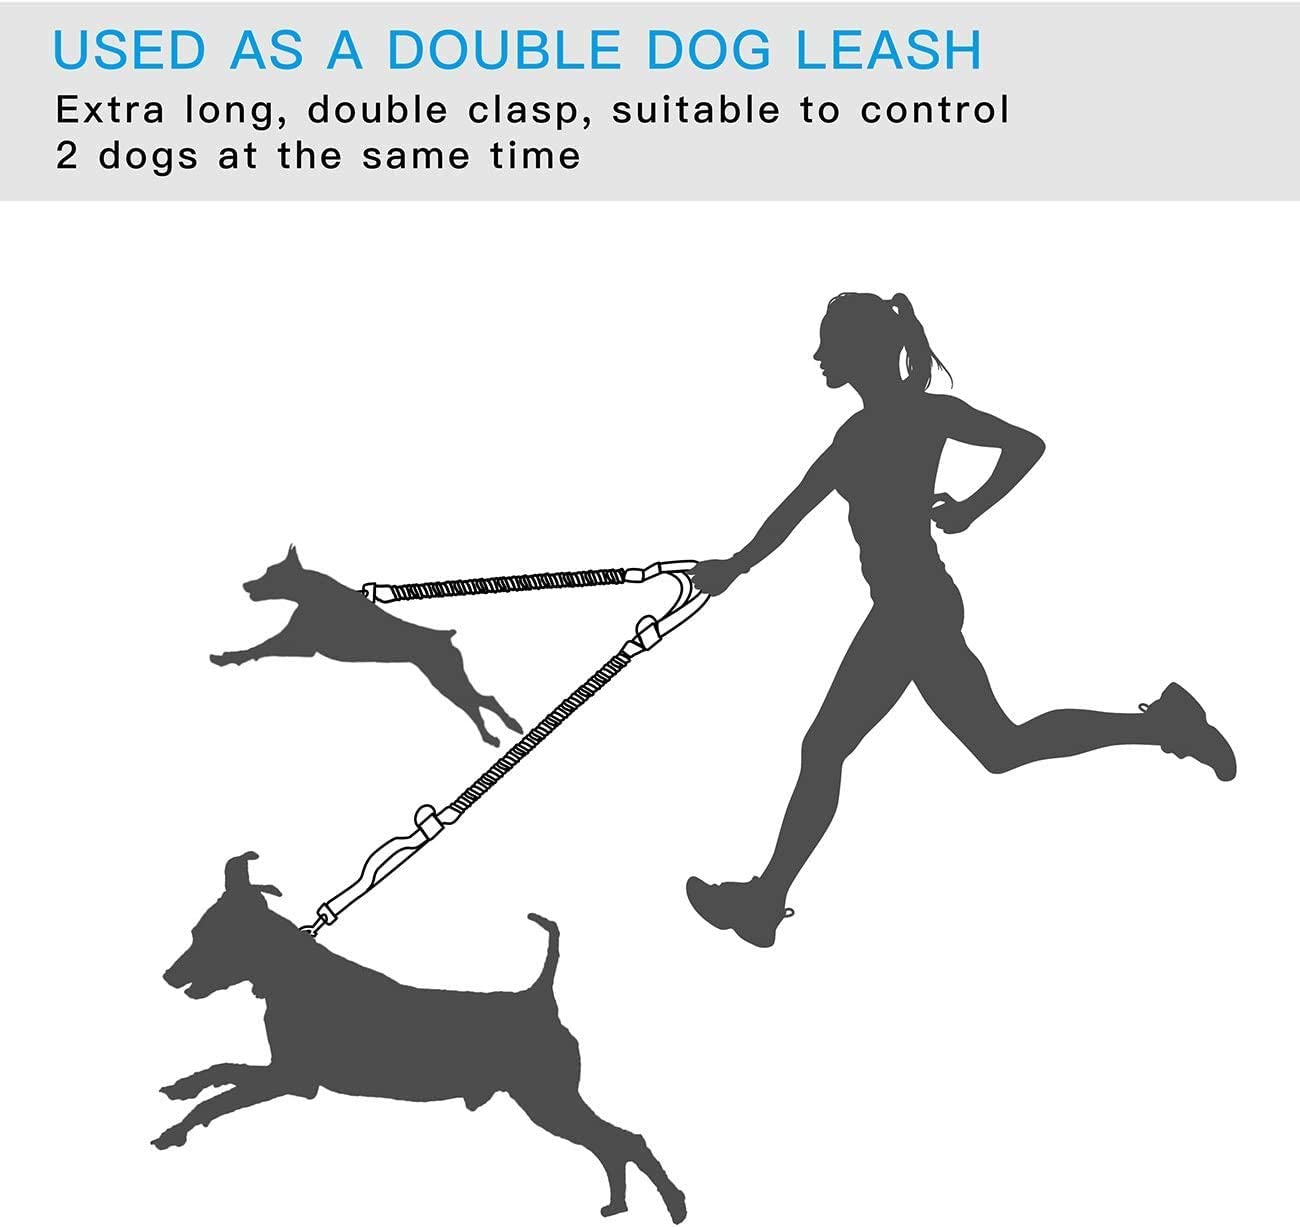 ساخت بانجی دوگانه قوی: طراحی بانجی دوتایی به جذب شوک، تکان و پرش از سگ‌ها تا وزن 150 پوند کمک می‌کند، فشار کمر را کاهش می‌دهد و خطر آسیب دیدگی را کاهش می‌دهد.